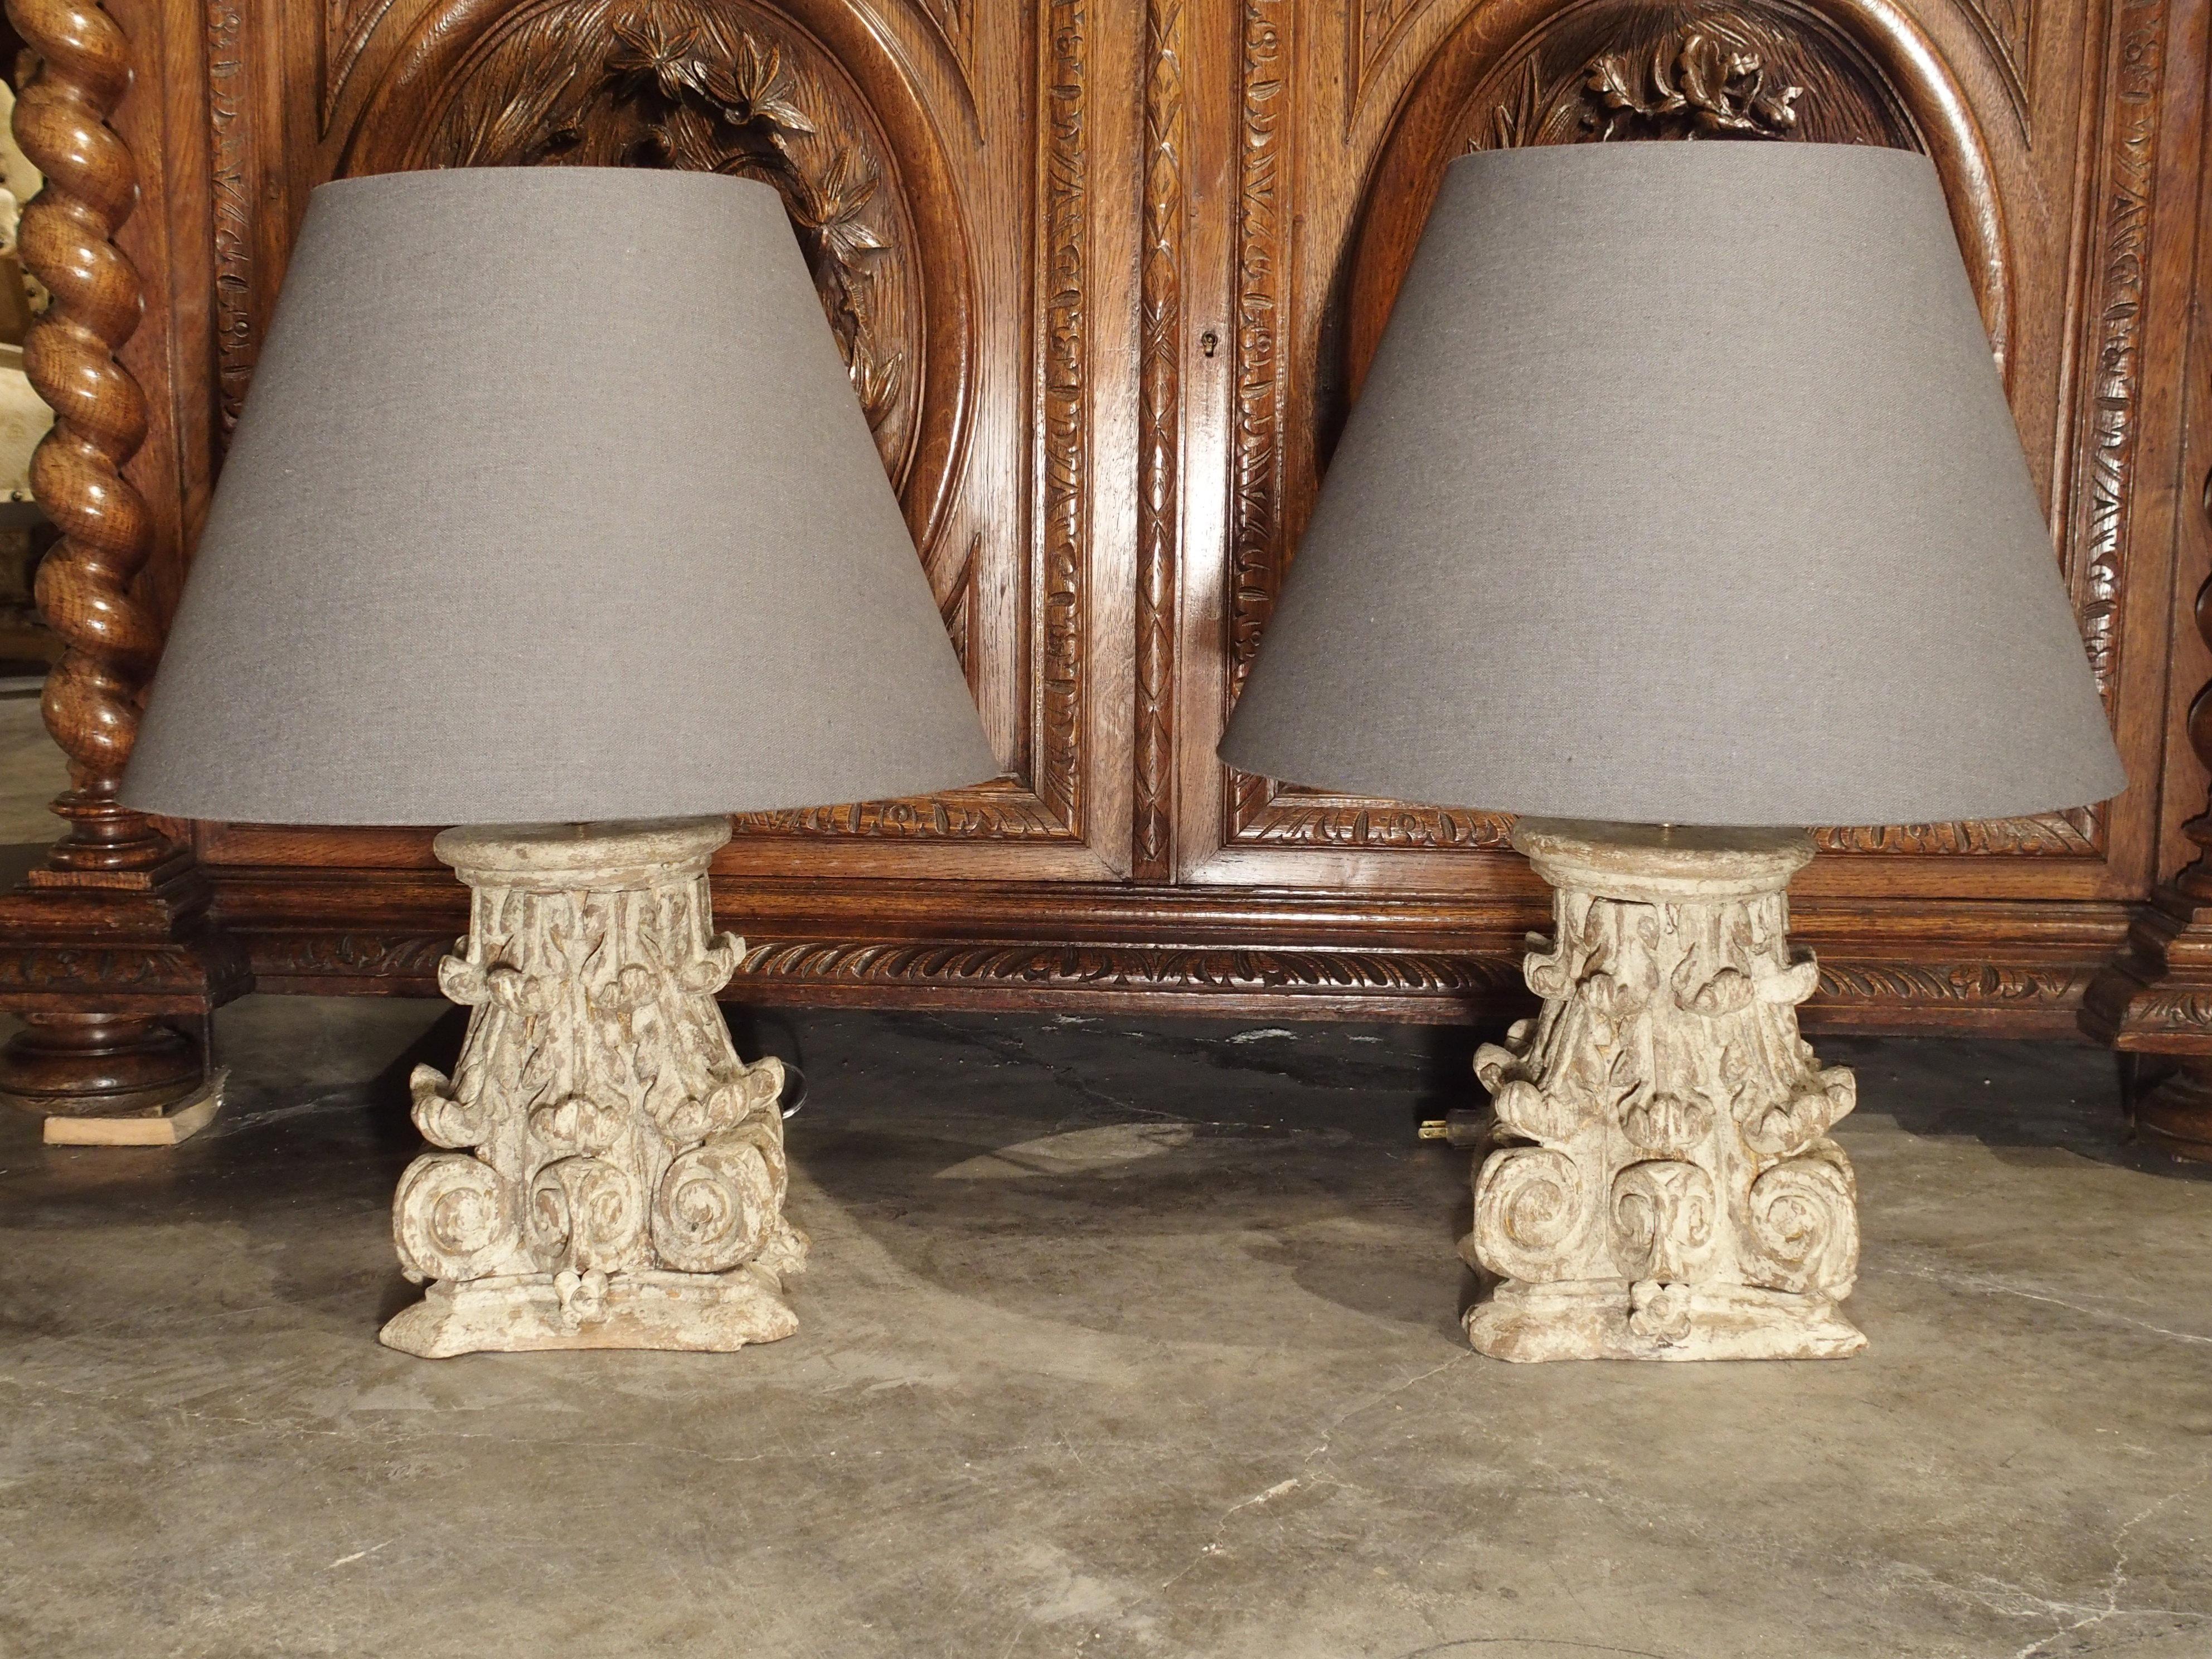 Cette paire de chapiteaux de colonnes en chêne français du XVIIIe siècle a été transformée en merveilleuses lampes de table. Les chapiteaux sont de style corinthien avec des motifs de feuilles d'acanthe, et ils présentent une belle finition de